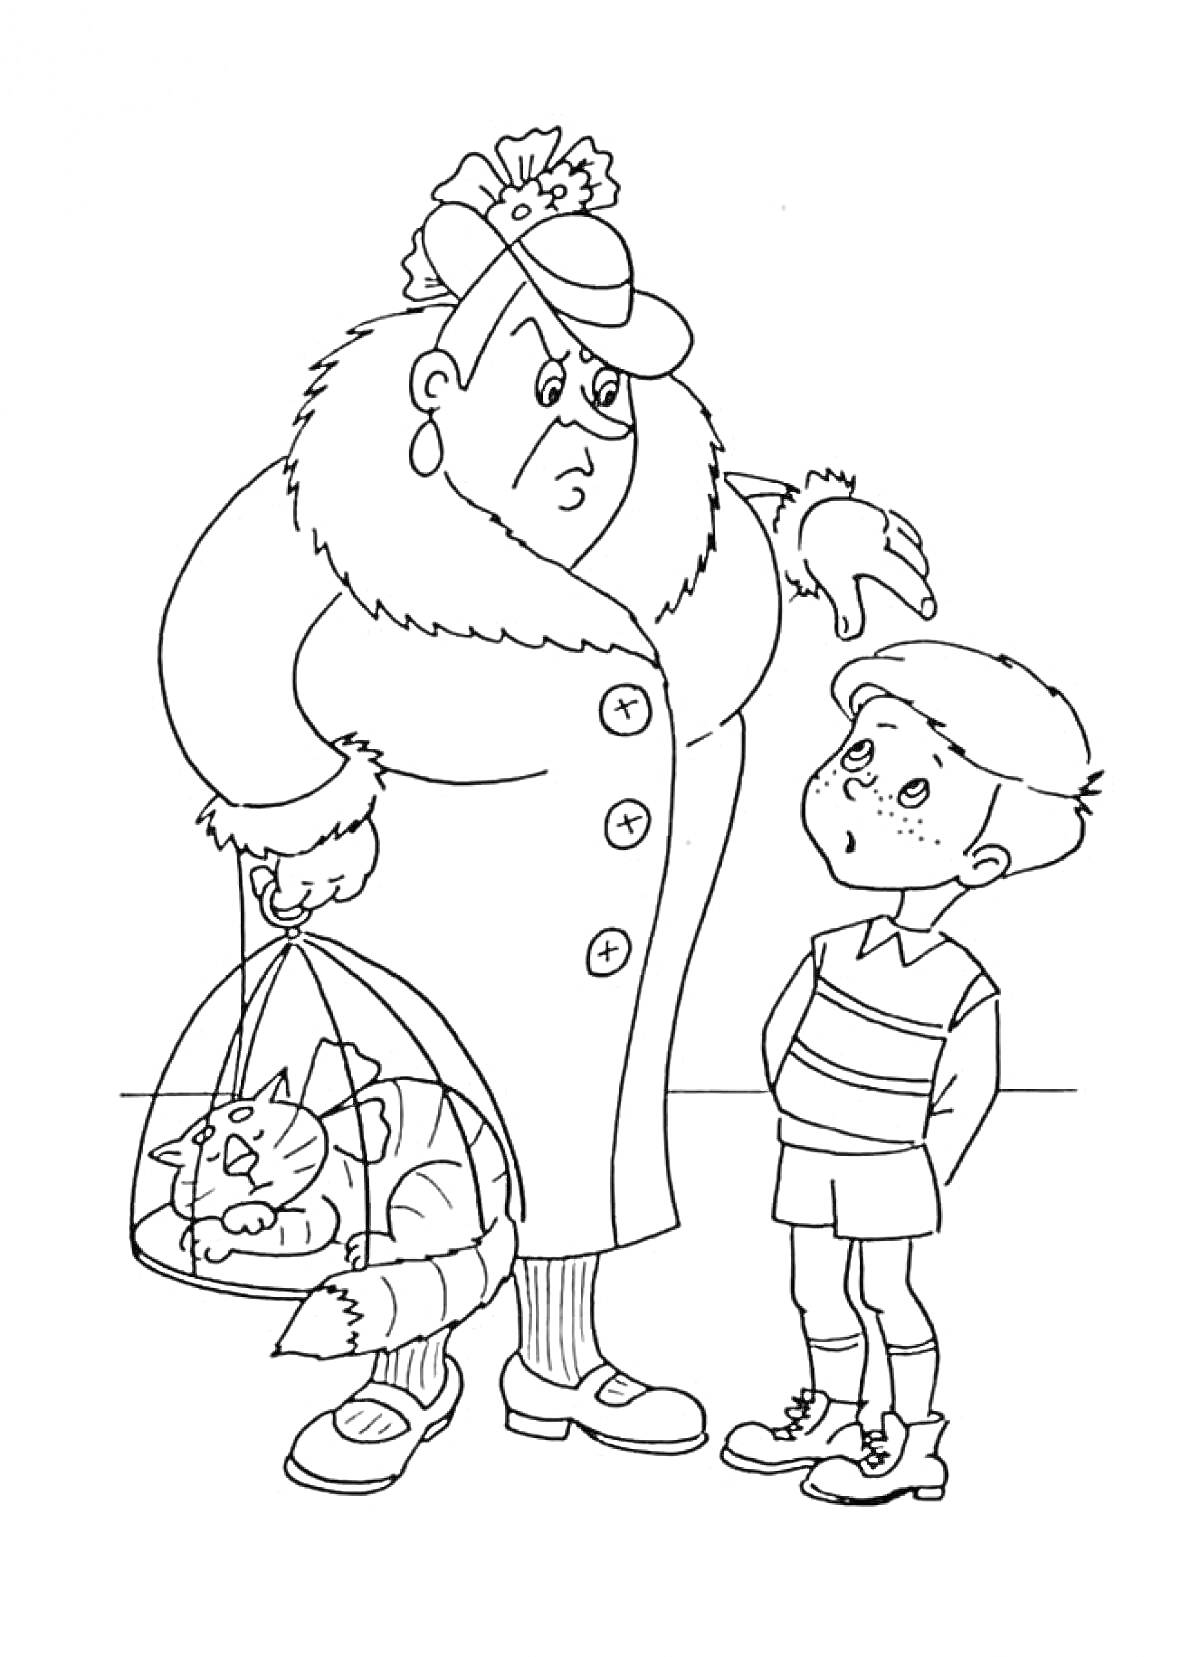 Пожилая женщина в шляпе и пальто держит корзину с кошкой, рядом стоит мальчик в полосатой футболке и шортах